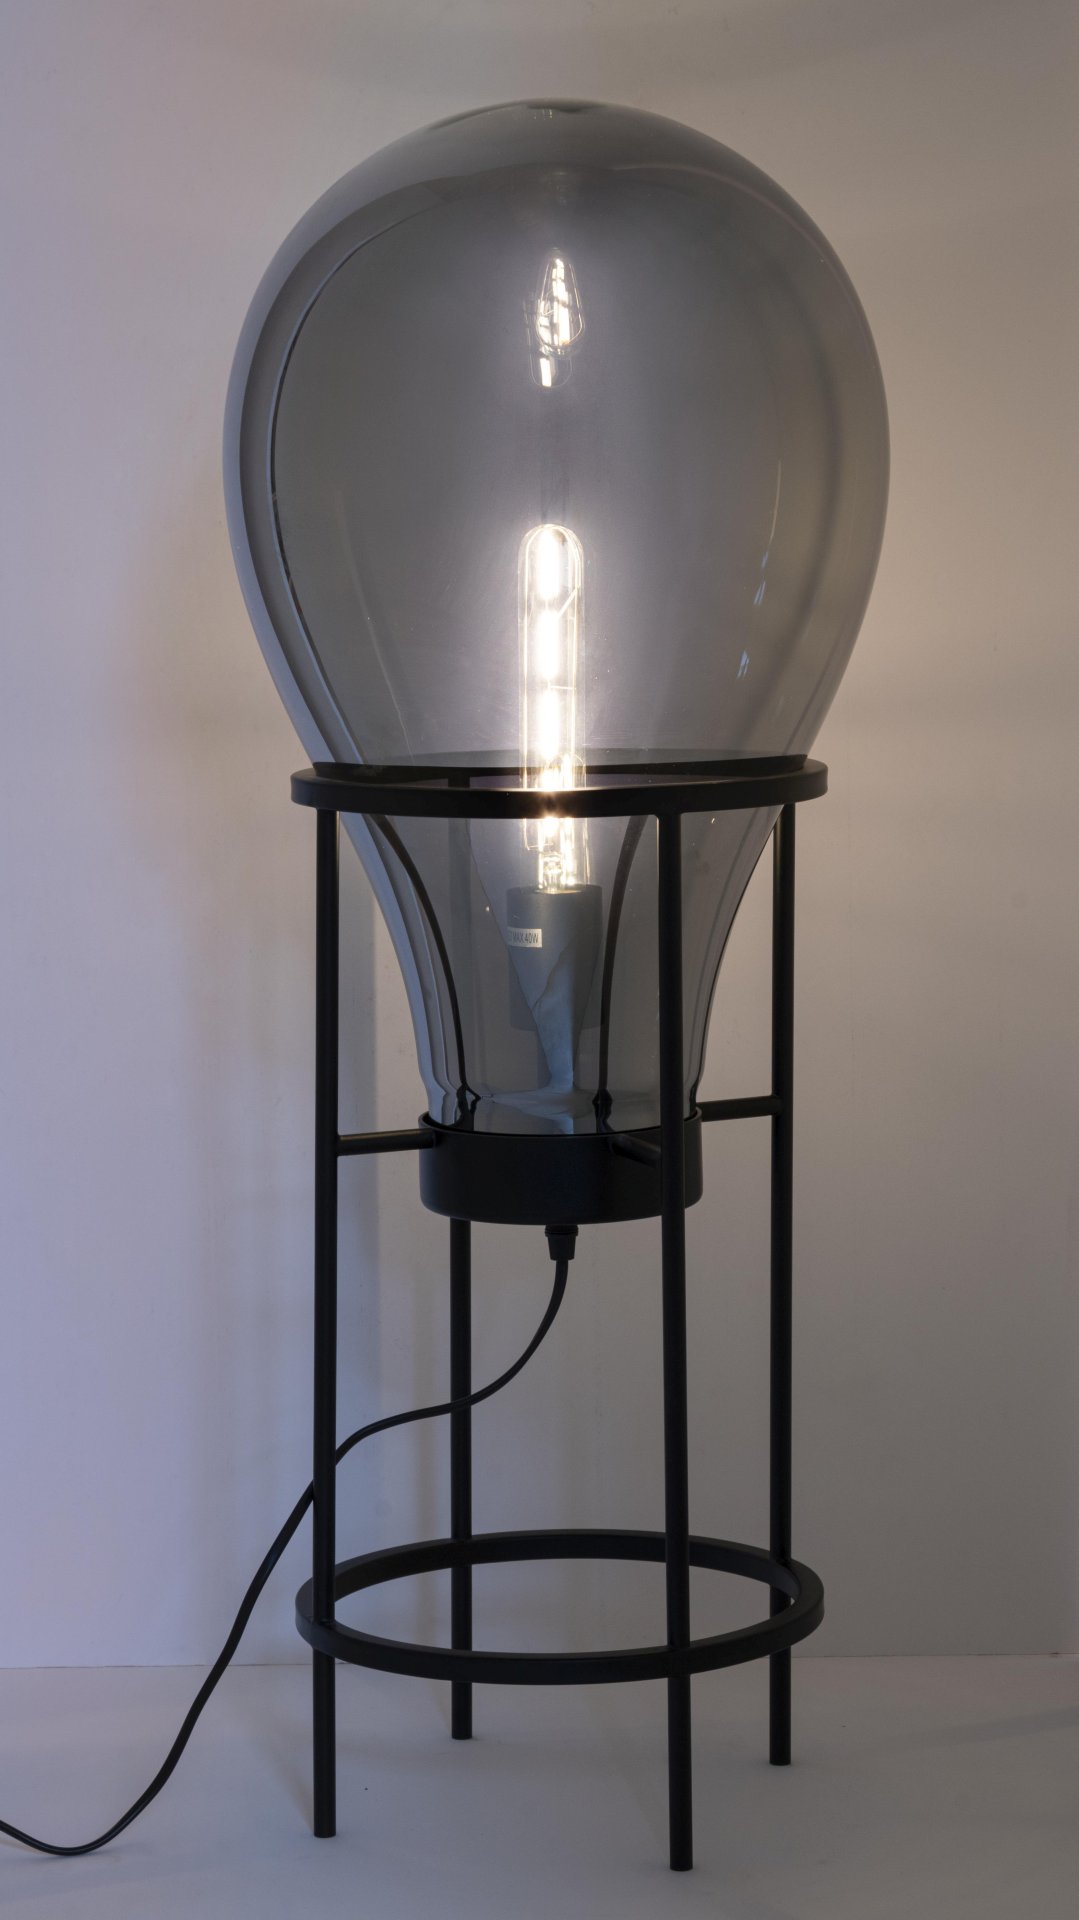 Die Stehleuchte Shine überzeugt mit ihrem modernen Design. Gefertigt wurde sie aus Metall, welches einen schwarzen Farbton besitzt. Der Lampenschirm ist aus Glas. Die Lampe besitzt eine Höhe von 78 cm.